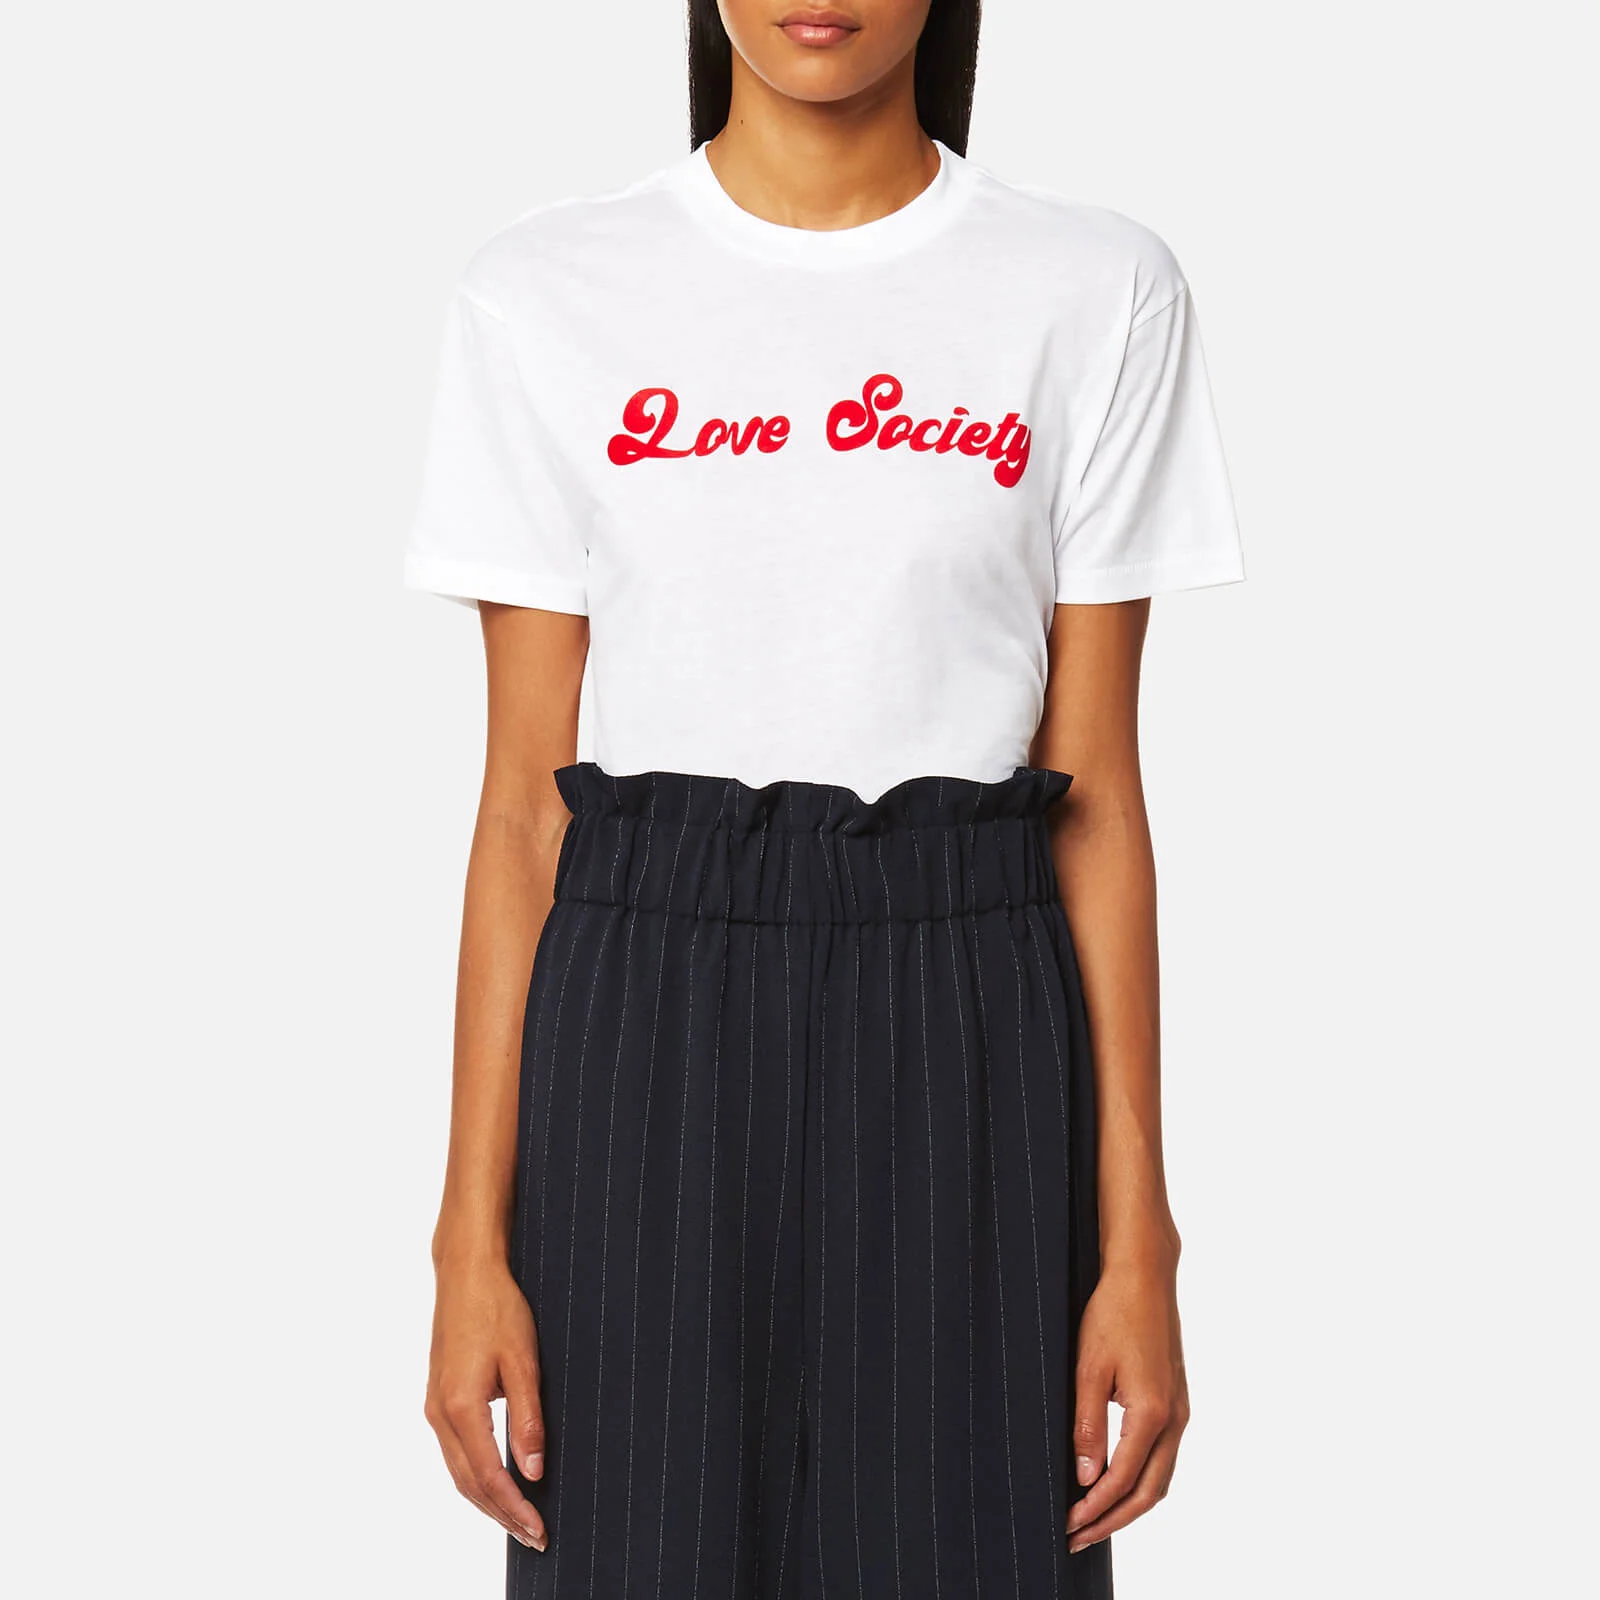 Ganni Women's Harway Love Society T-Shirt - Bright White Image 1